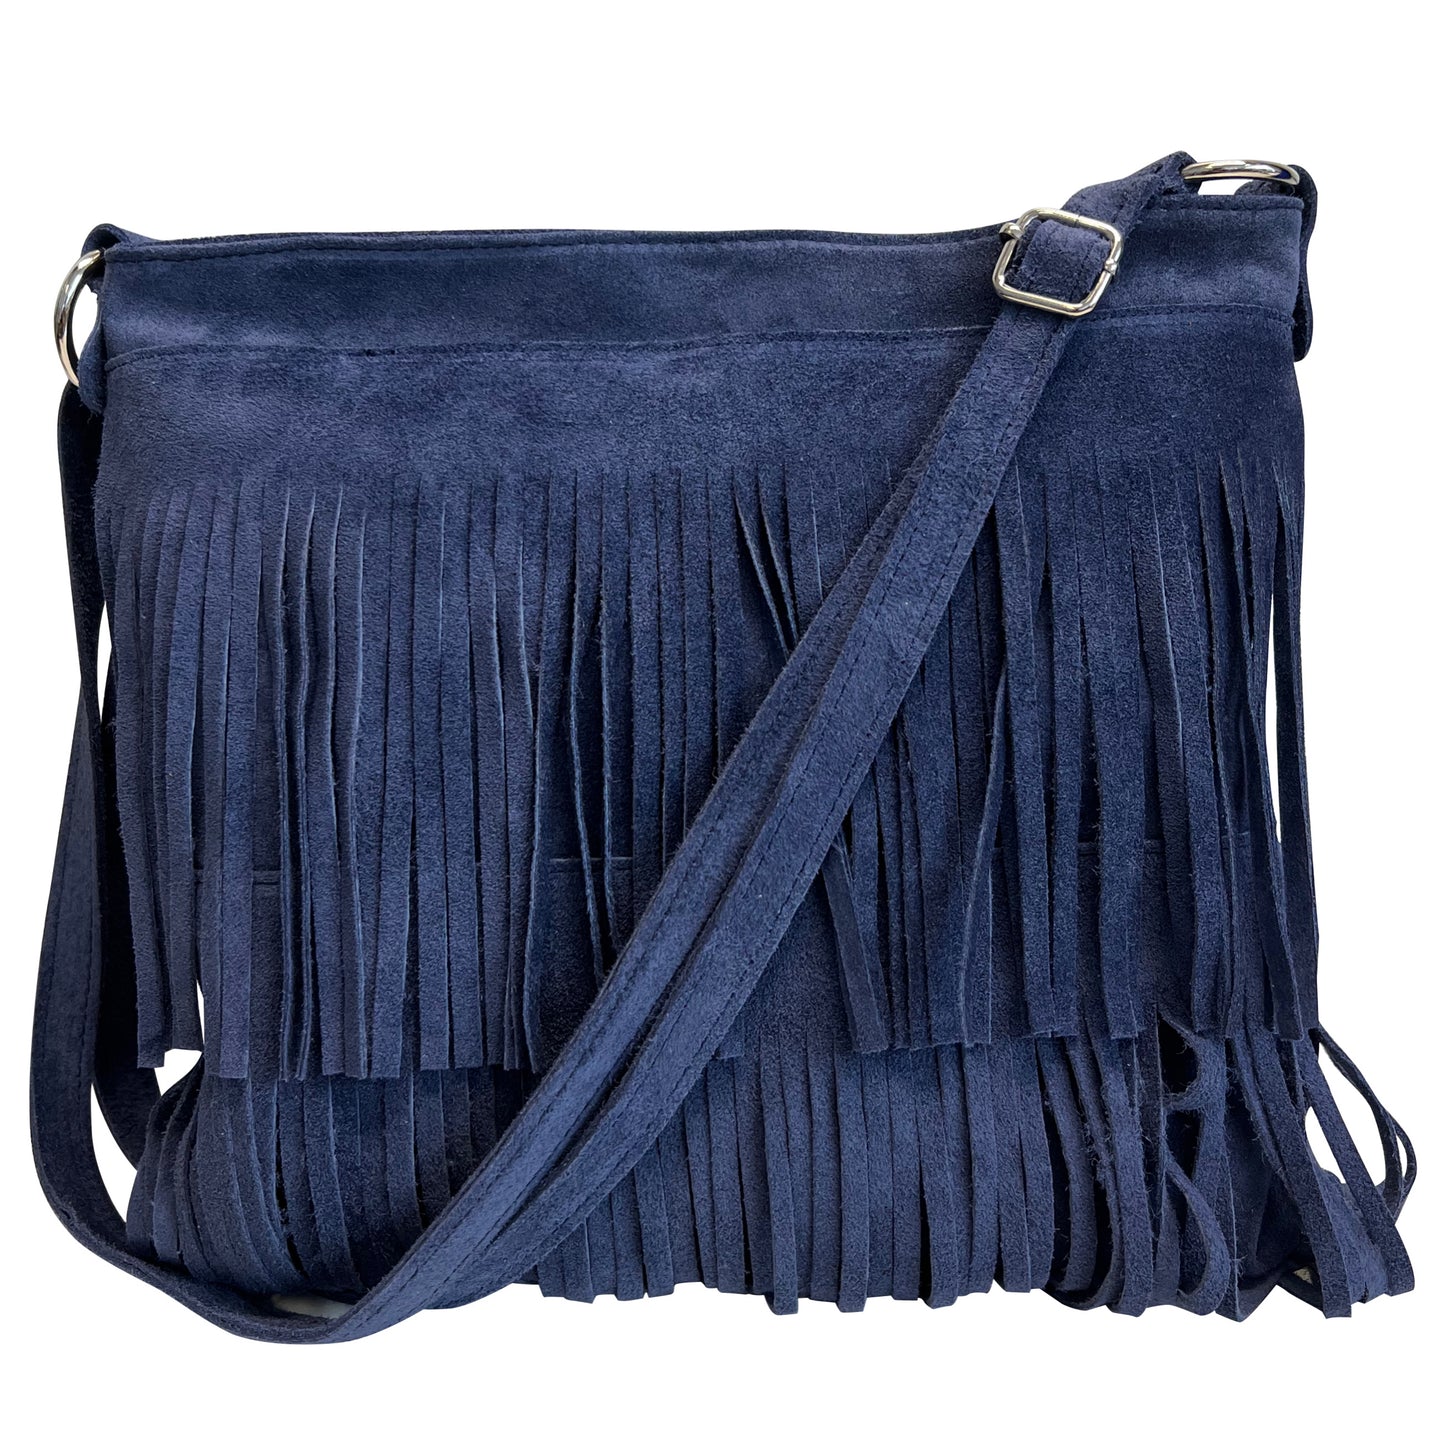 Modarno Shoulder bag with fringes in suede - women's shoulder bag in suede